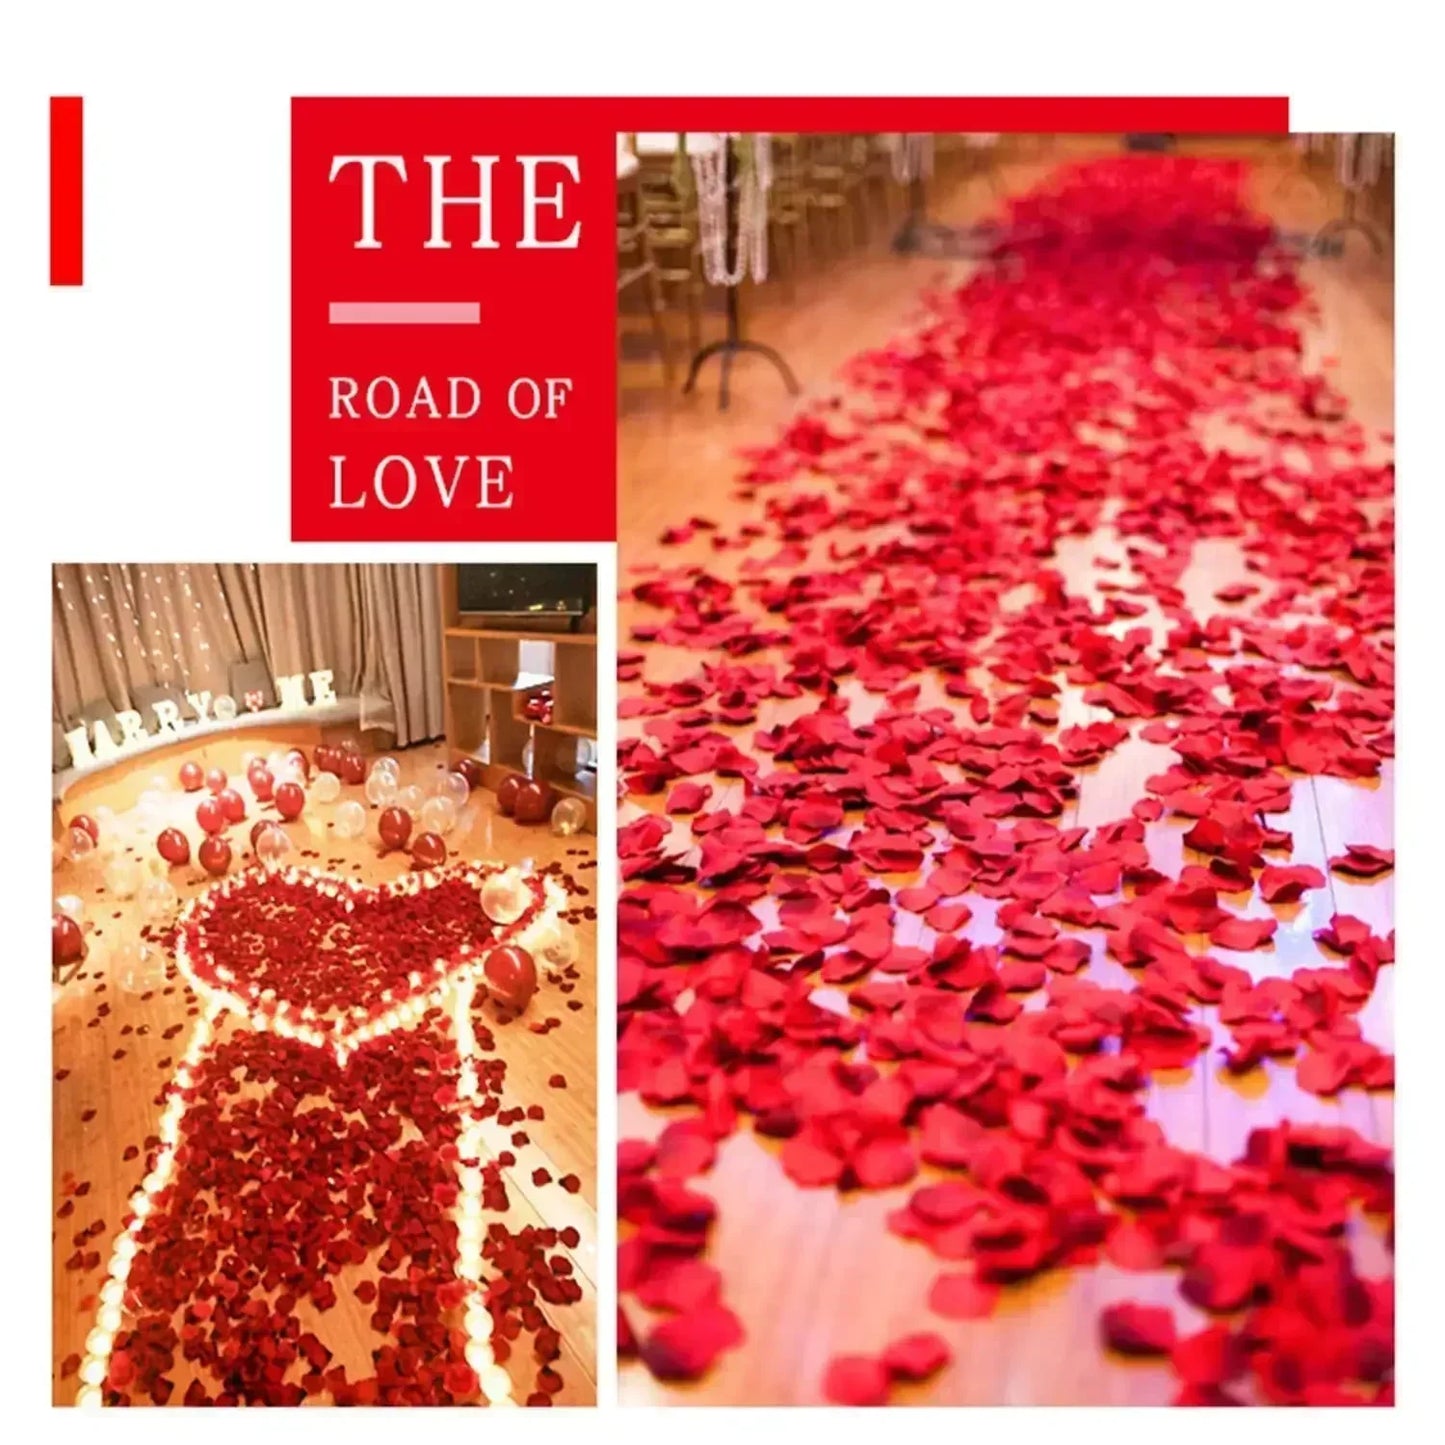 100-2000pcs künstliche falsche Rosenblätter farbenfrohe rote Weißgold Rosen Blütenblumen für romantische Hochzeitsfeier Gefälligkeiten Dekoration